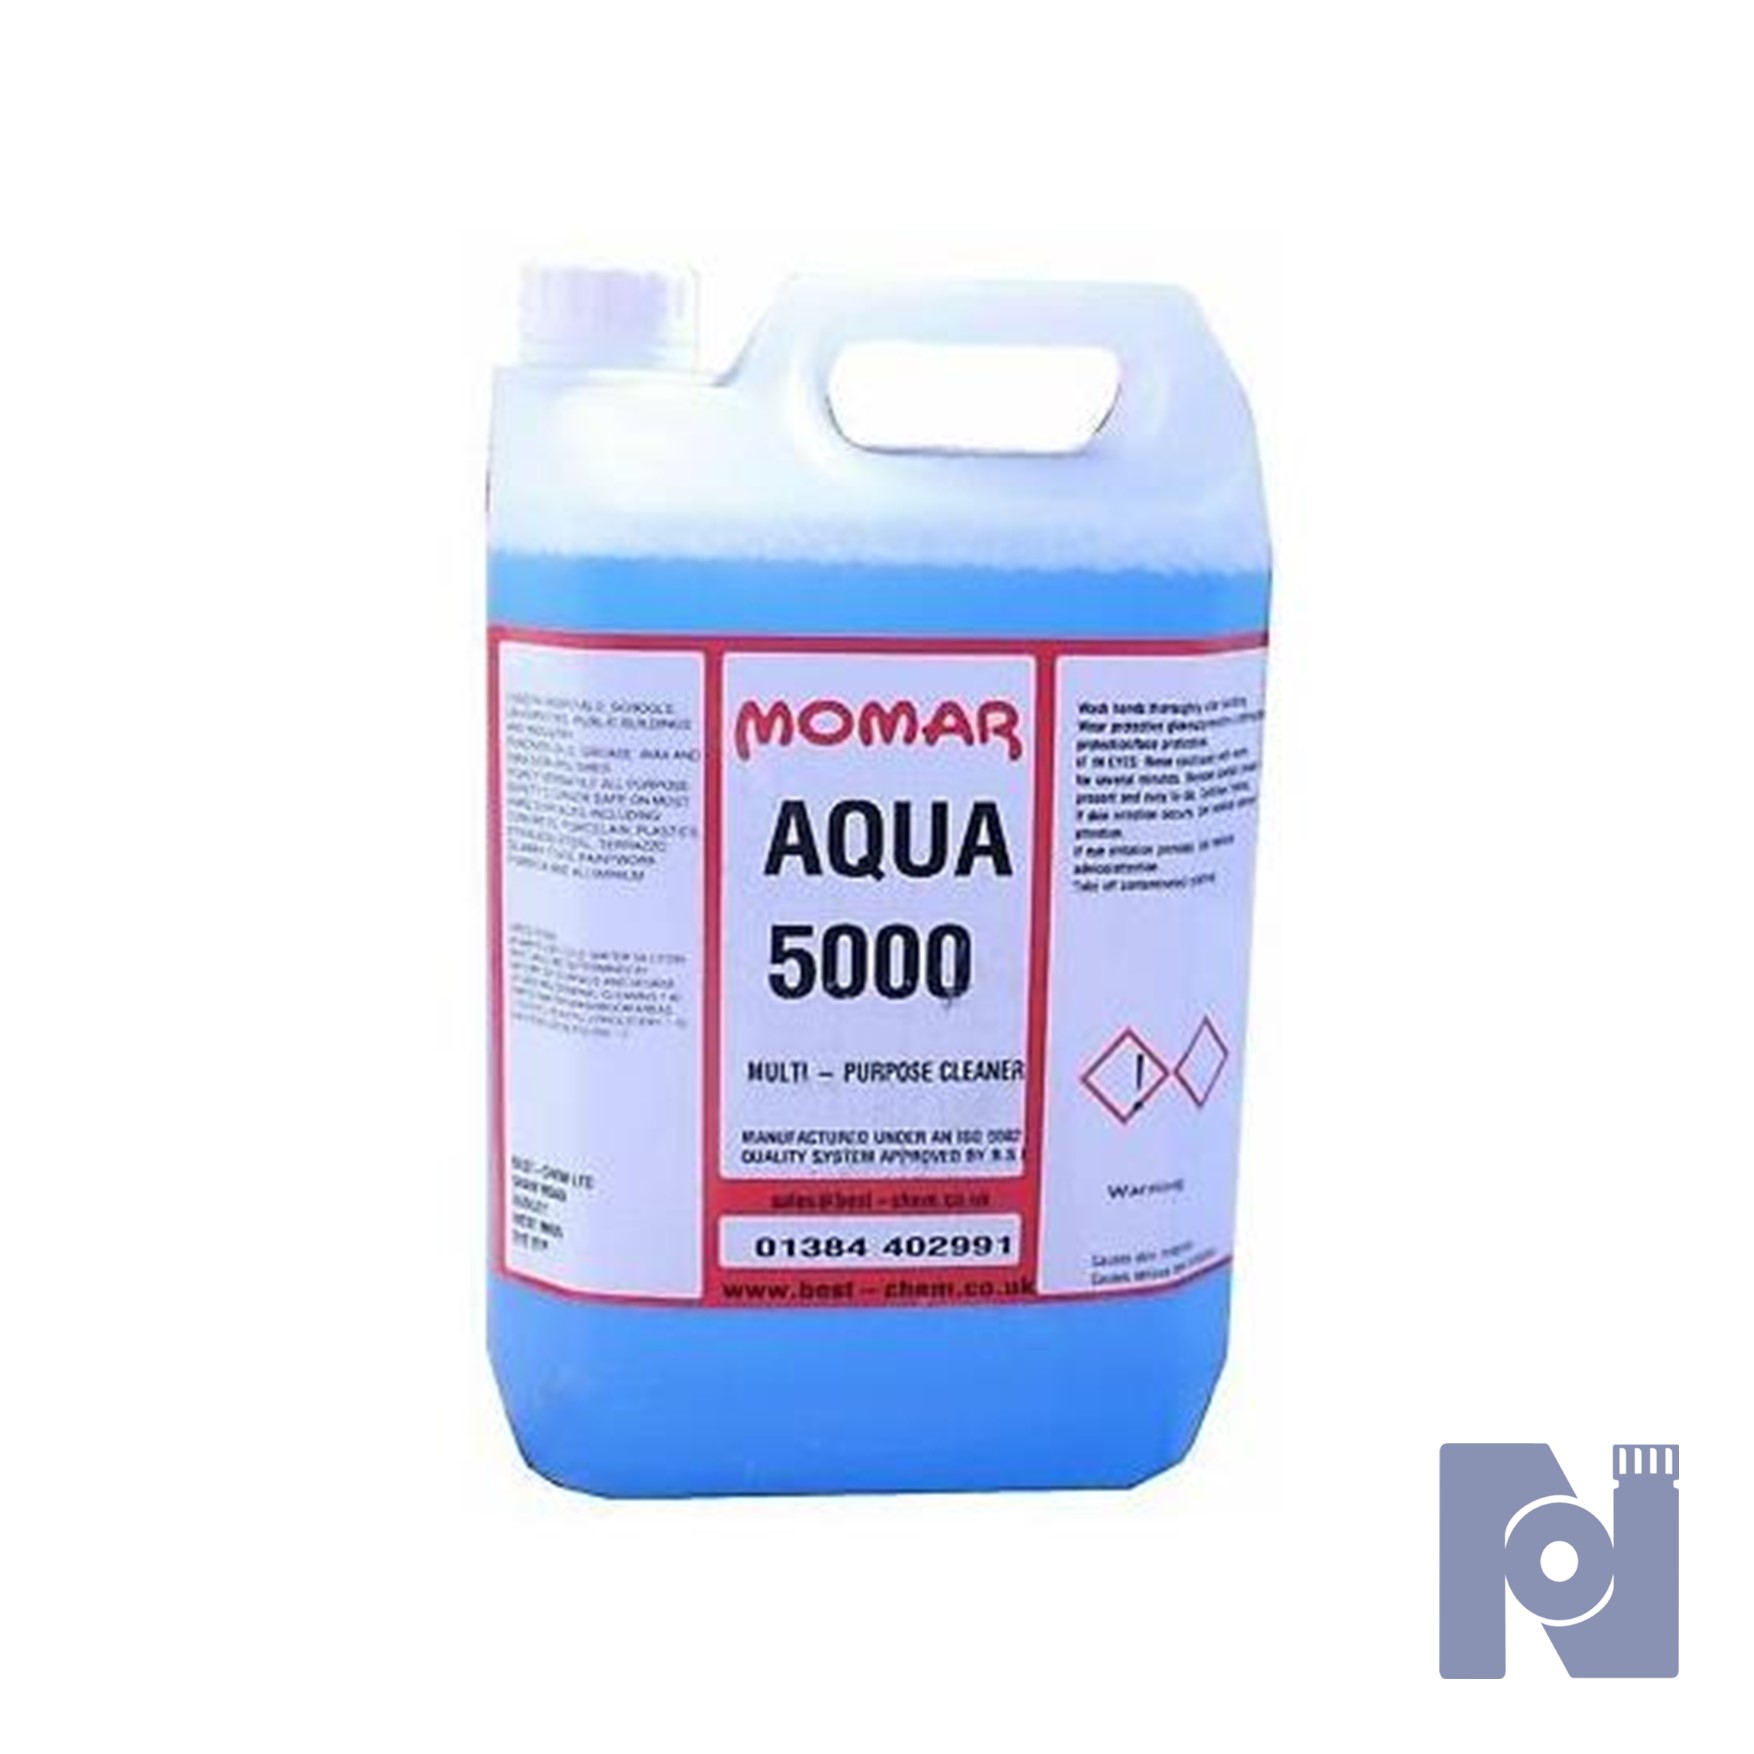 Momar Aqua 5000 Cleaner